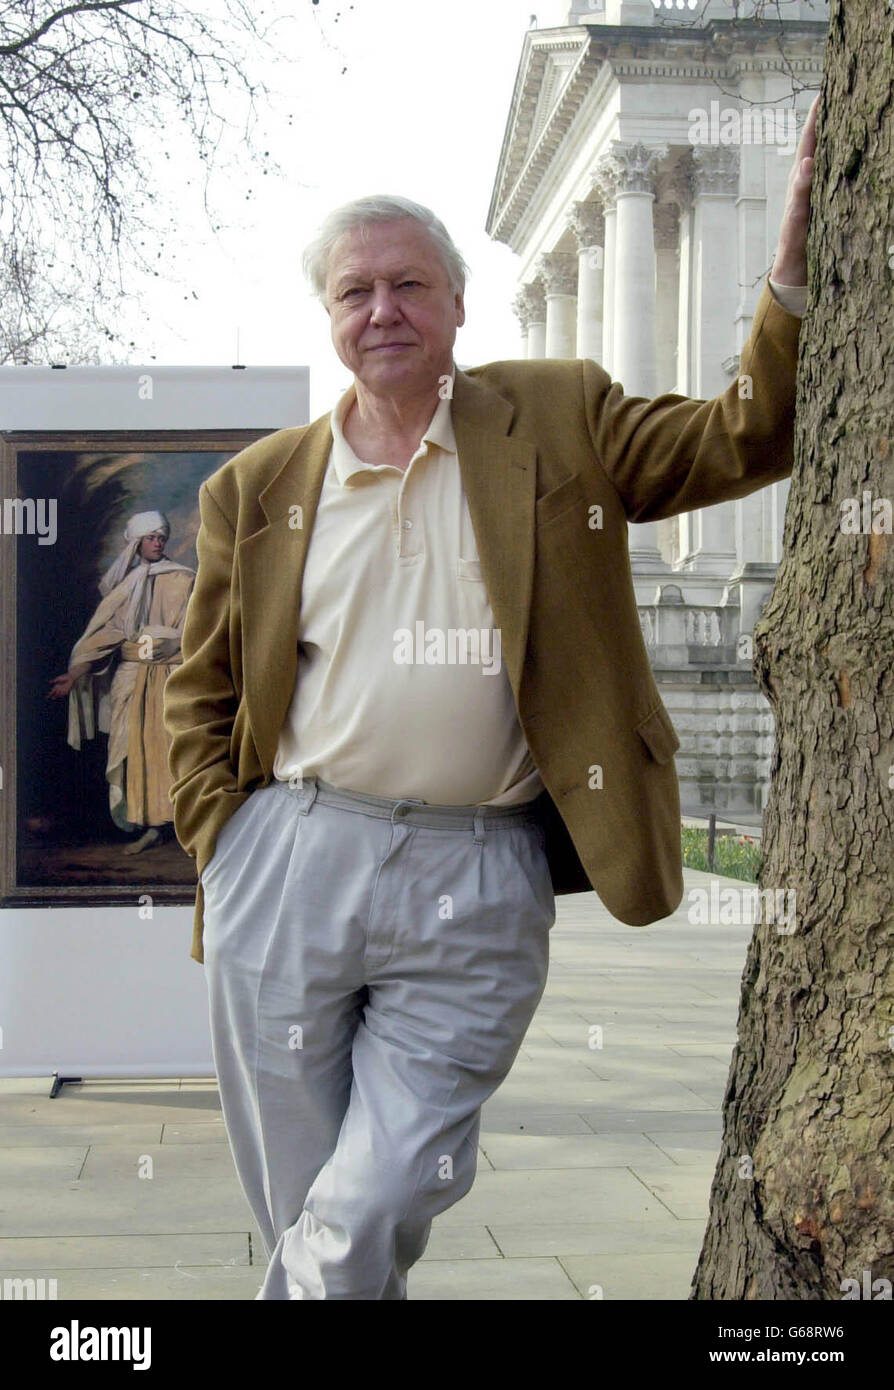 Sir David Attenborough lors d'une séance photo en dehors de la Grande-Bretagne de Tate, dans le centre de Londres, pour lancer l'appel du centenaire des collections nationales d'art pour sauver le prtrait de Sir Joshua Reynold de 'Omai' pour la nation. Le travail est l'un des nombreux articles en suspens actuellement menacés d'exportation à l'étranger. Banque D'Images